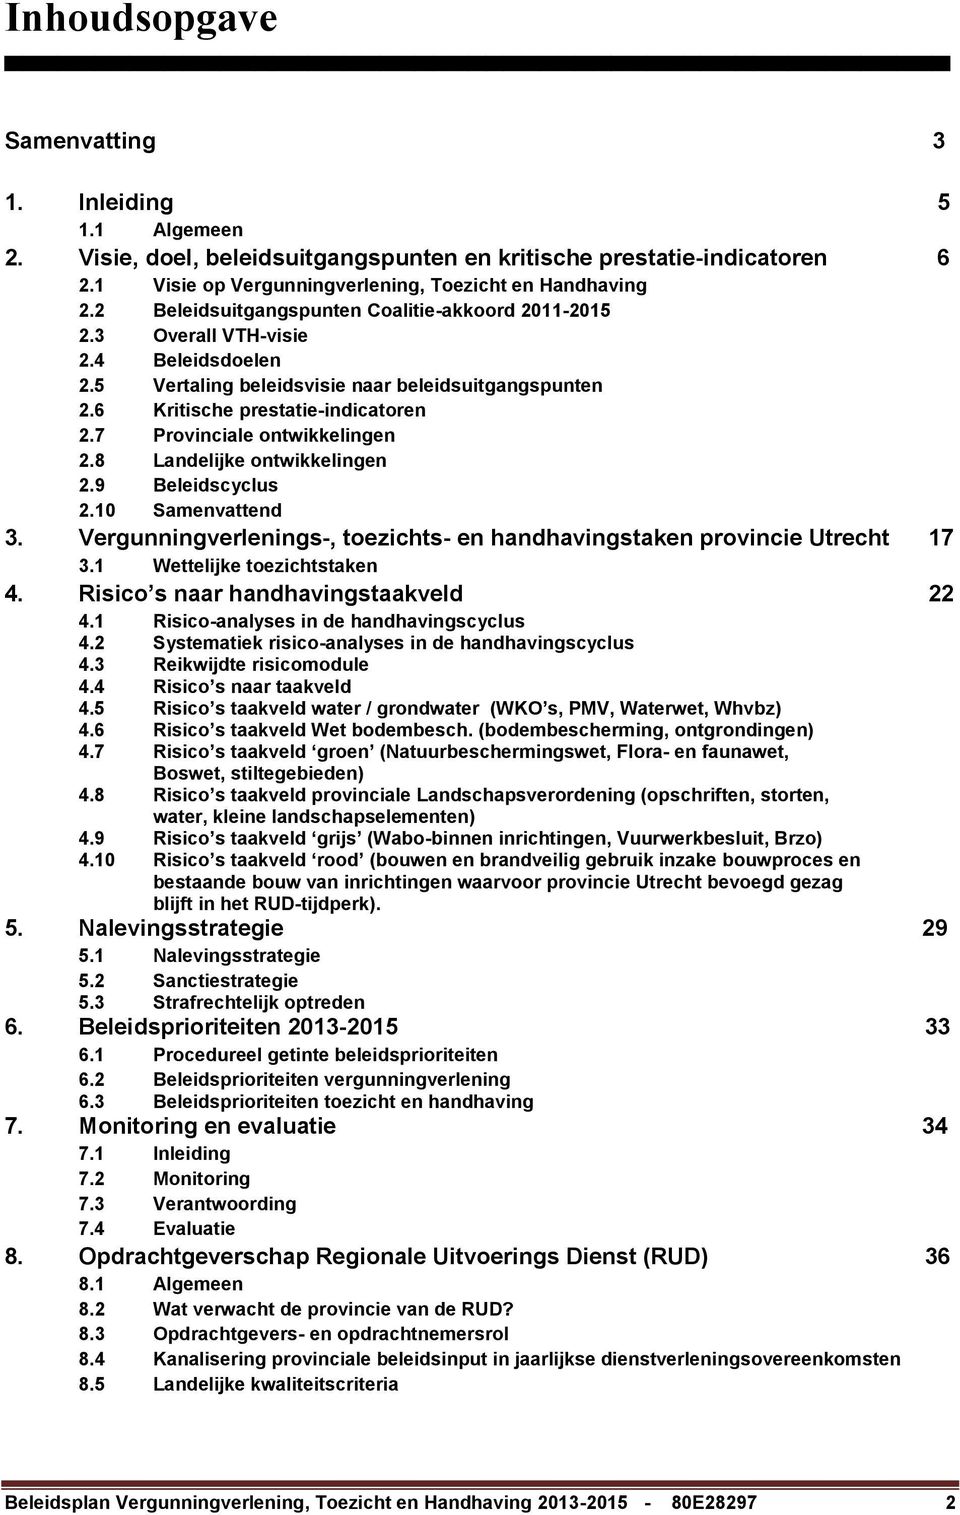 7 Provinciale ontwikkelingen 2.8 Landelijke ontwikkelingen 2.9 Beleidscyclus 2.10 Samenvattend 3. Vergunningverlenings-, toezichts- en handhavingstaken provincie Utrecht 17 3.